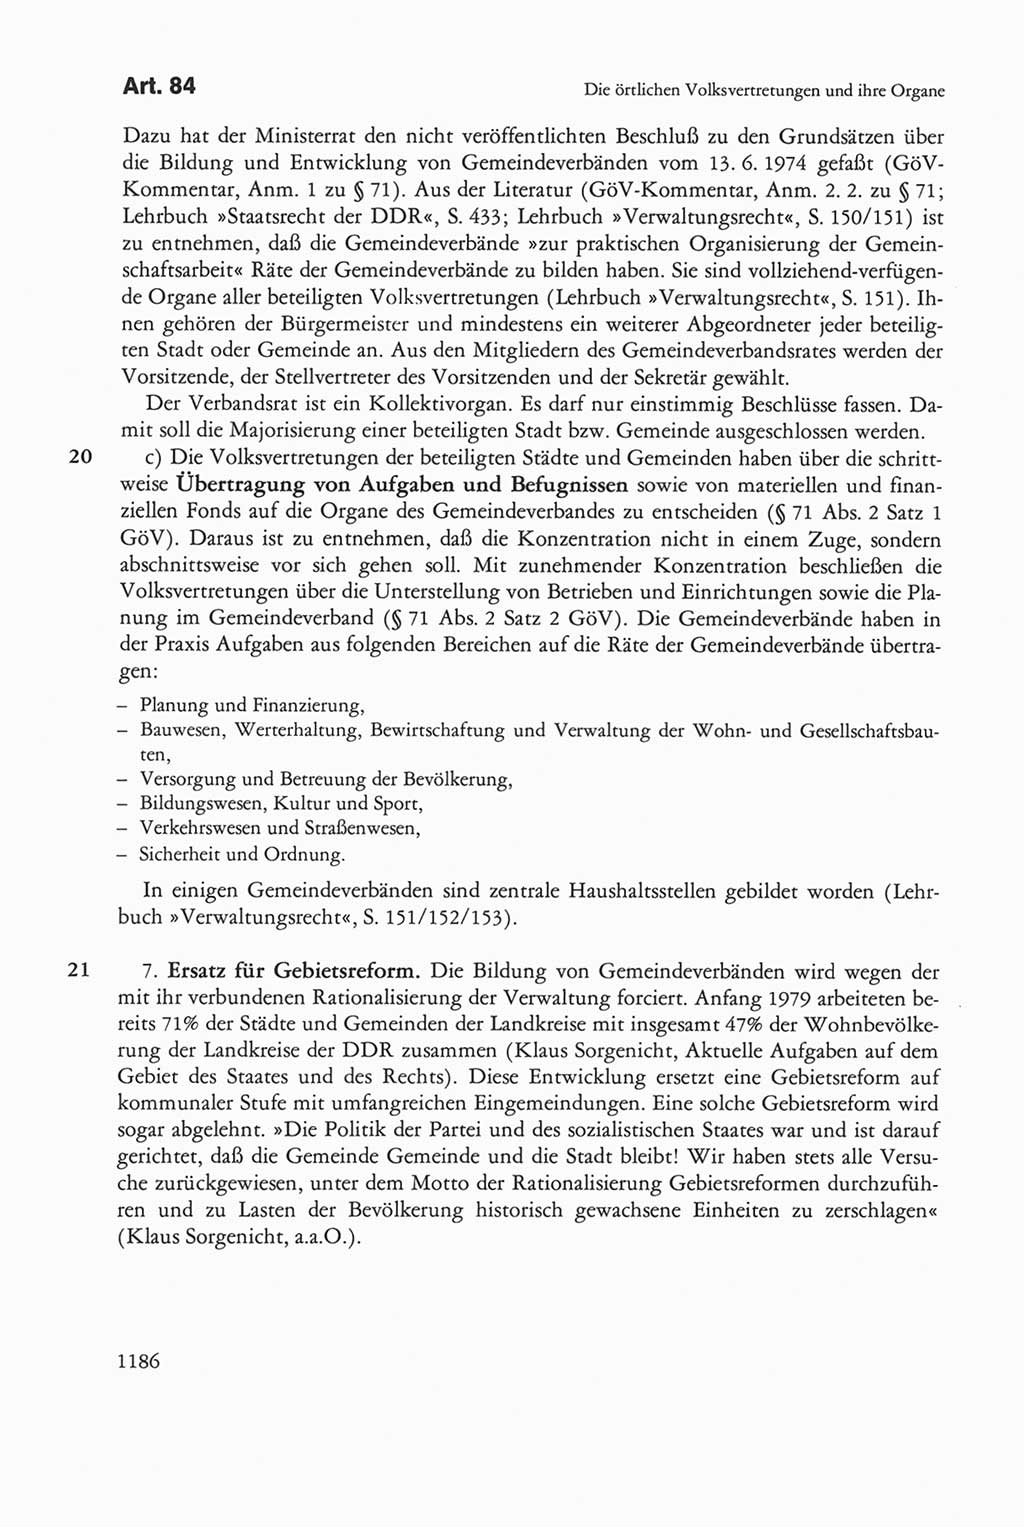 Die sozialistische Verfassung der Deutschen Demokratischen Republik (DDR), Kommentar mit einem Nachtrag 1997, Seite 1186 (Soz. Verf. DDR Komm. Nachtr. 1997, S. 1186)